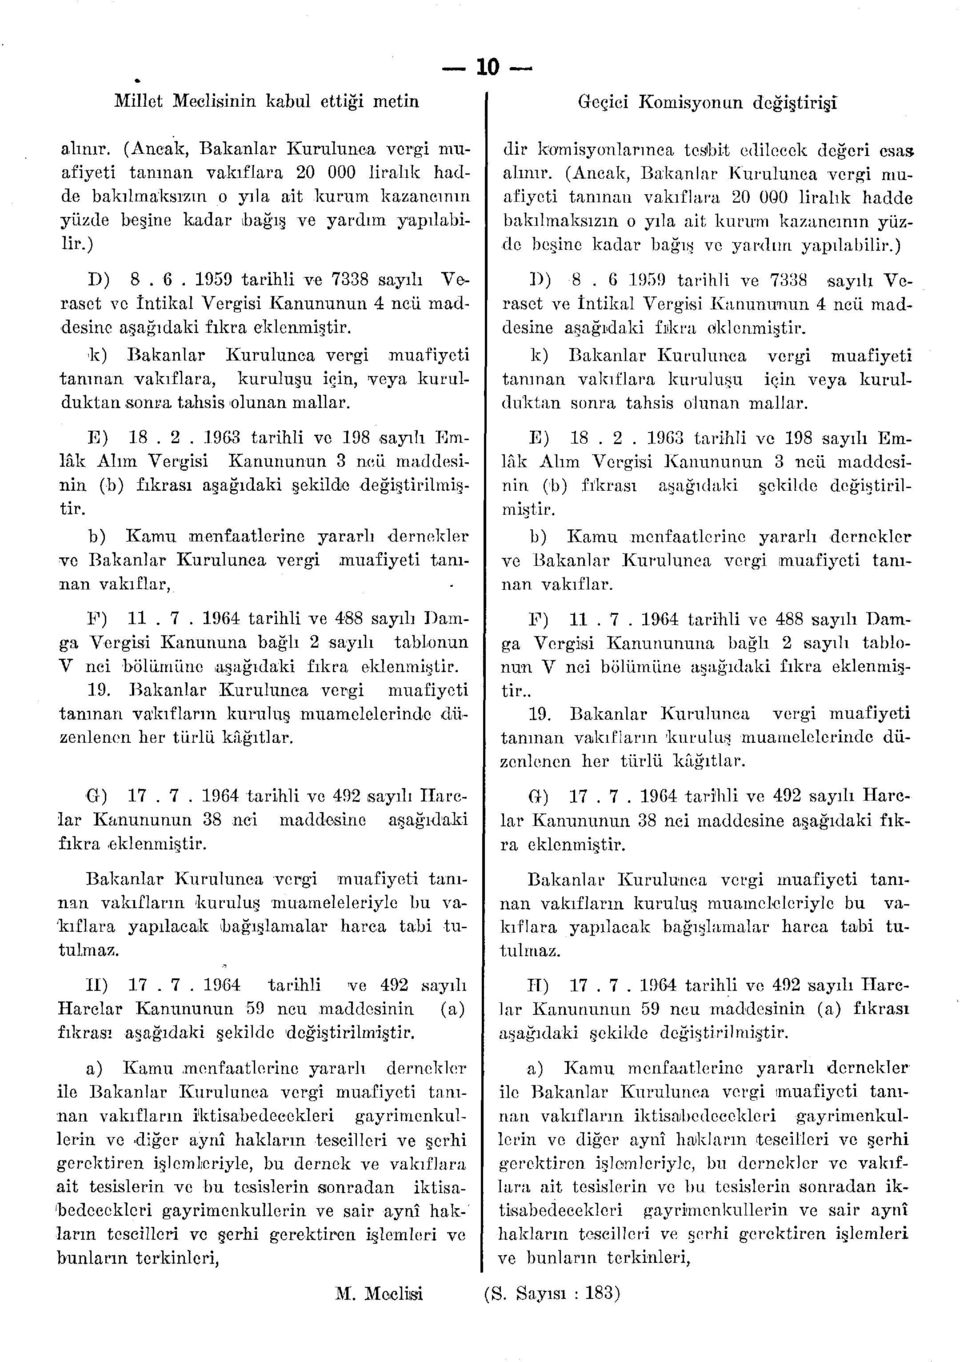 1959 tarihli ve 7338 sayılı Veraset ve İntikal Vergisi Kanununun 4 ncü maddesine aşağıdaki fıkra eklenmiştir.